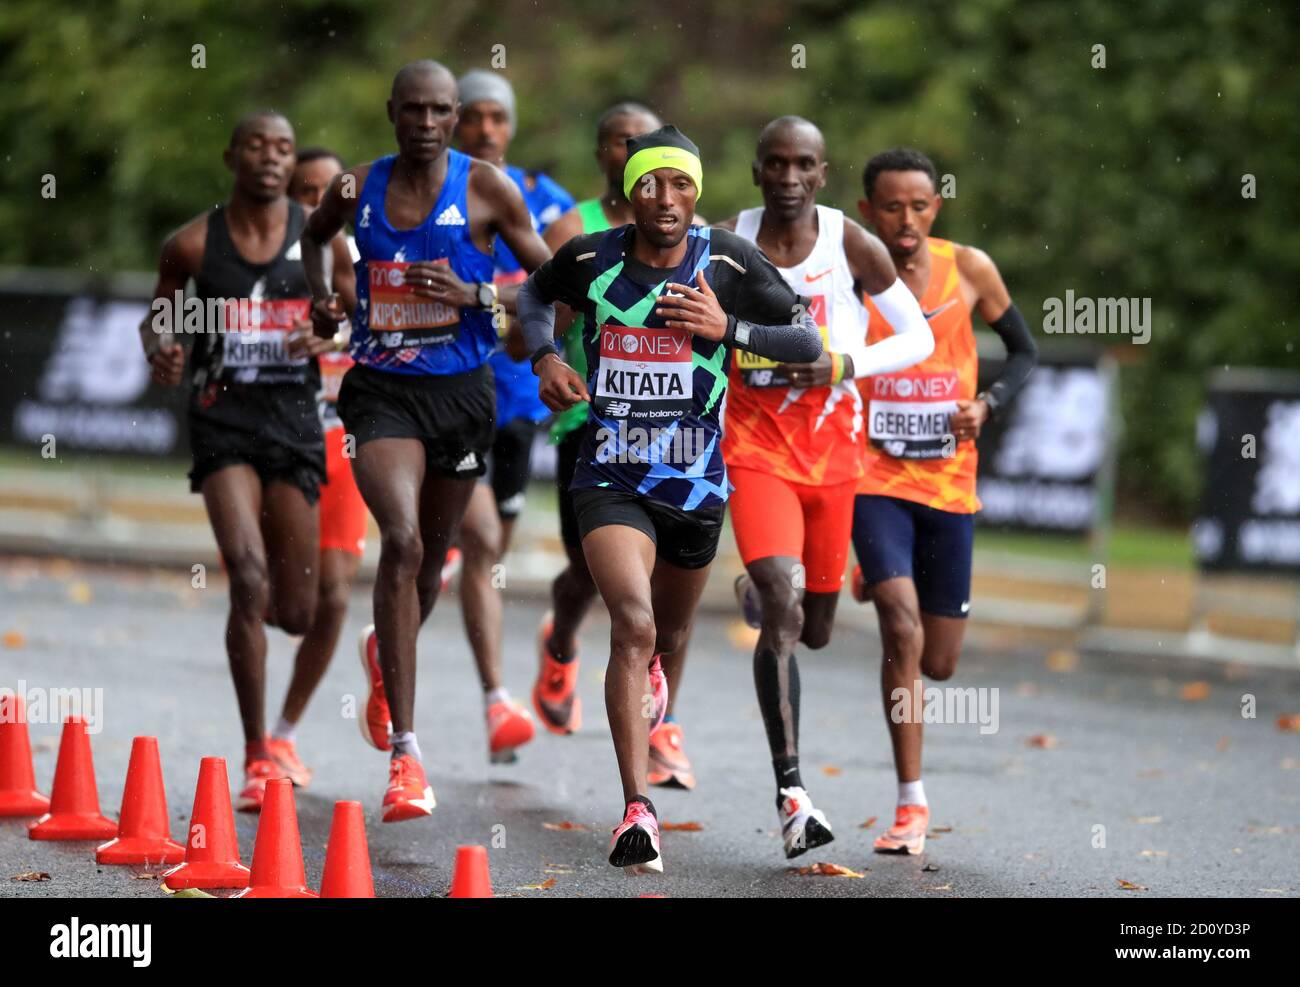 La Shura Kitata dell'Etiopia in azione durante la corsa Elite degli uomini durante la Maratona di Londra dei Virgin Money intorno al St James' Park. Foto Stock